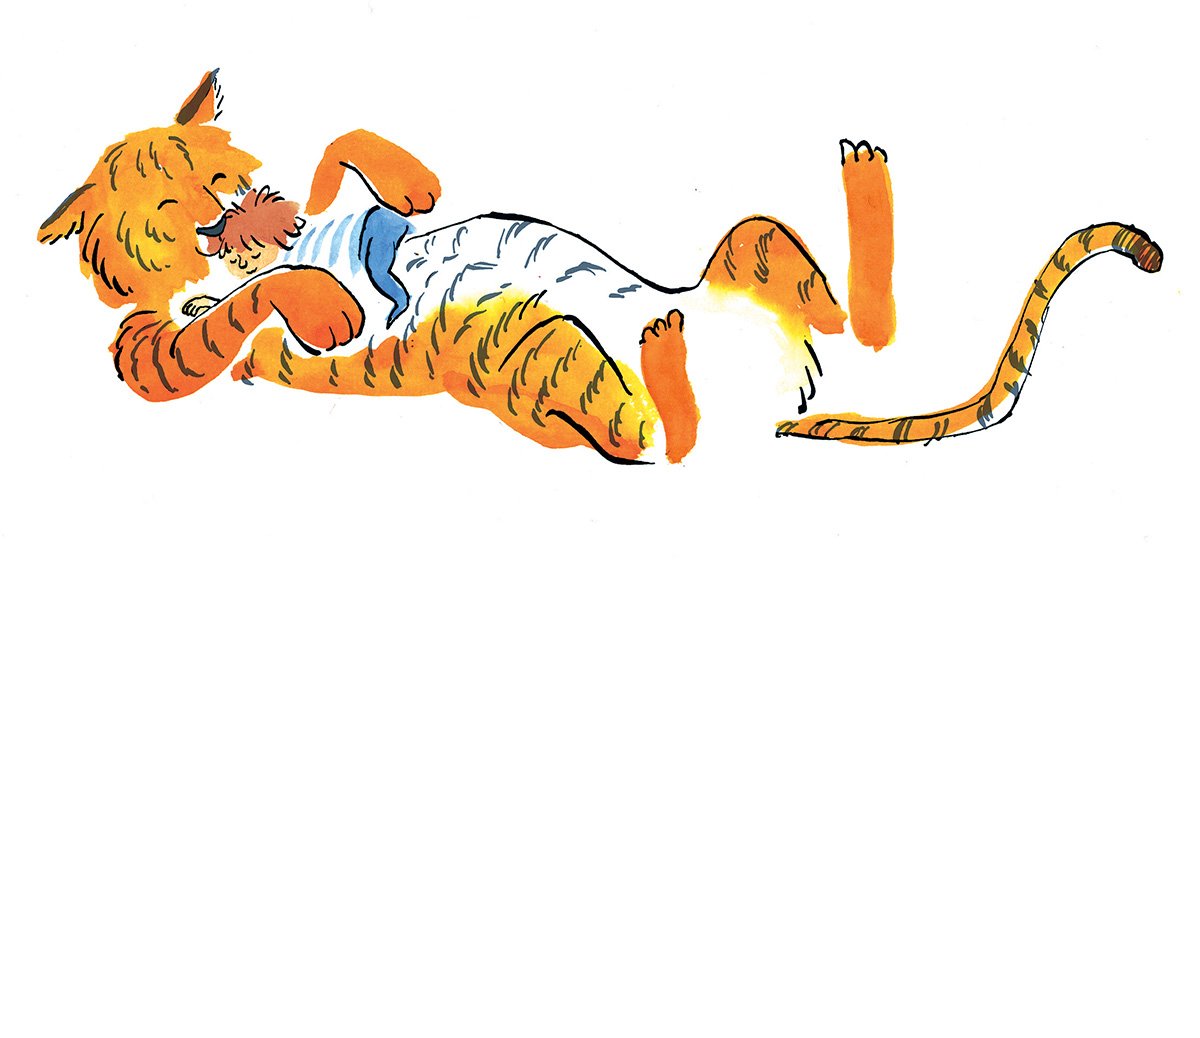 emma-chinnery-tiger-illustration.jpg